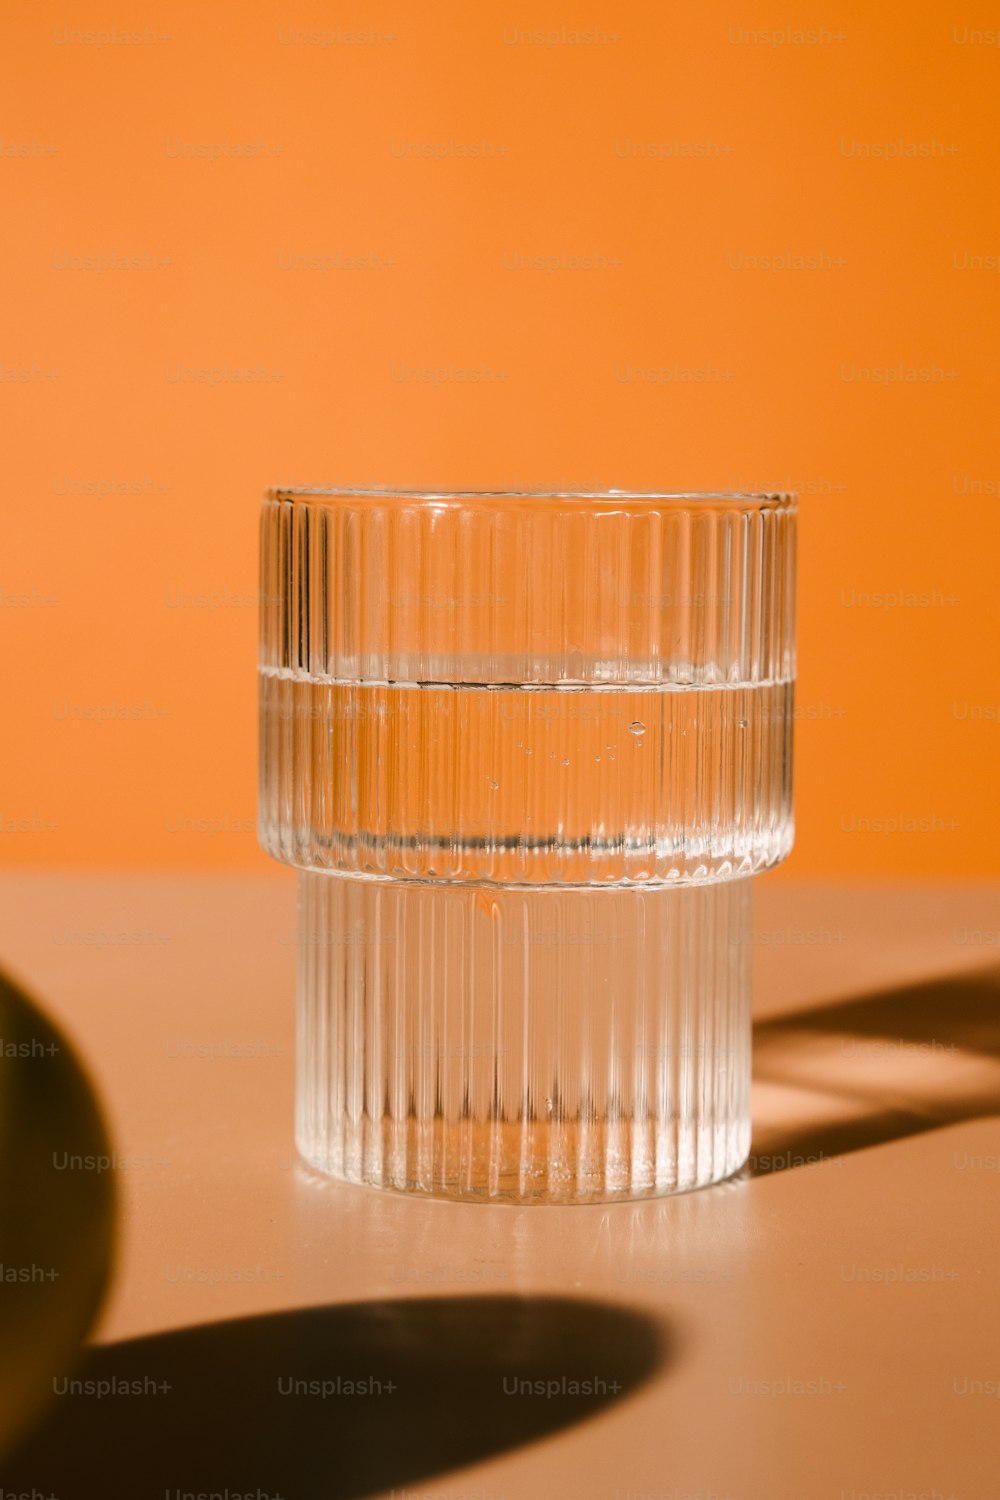 Un vaso de agua sentado sobre una mesa